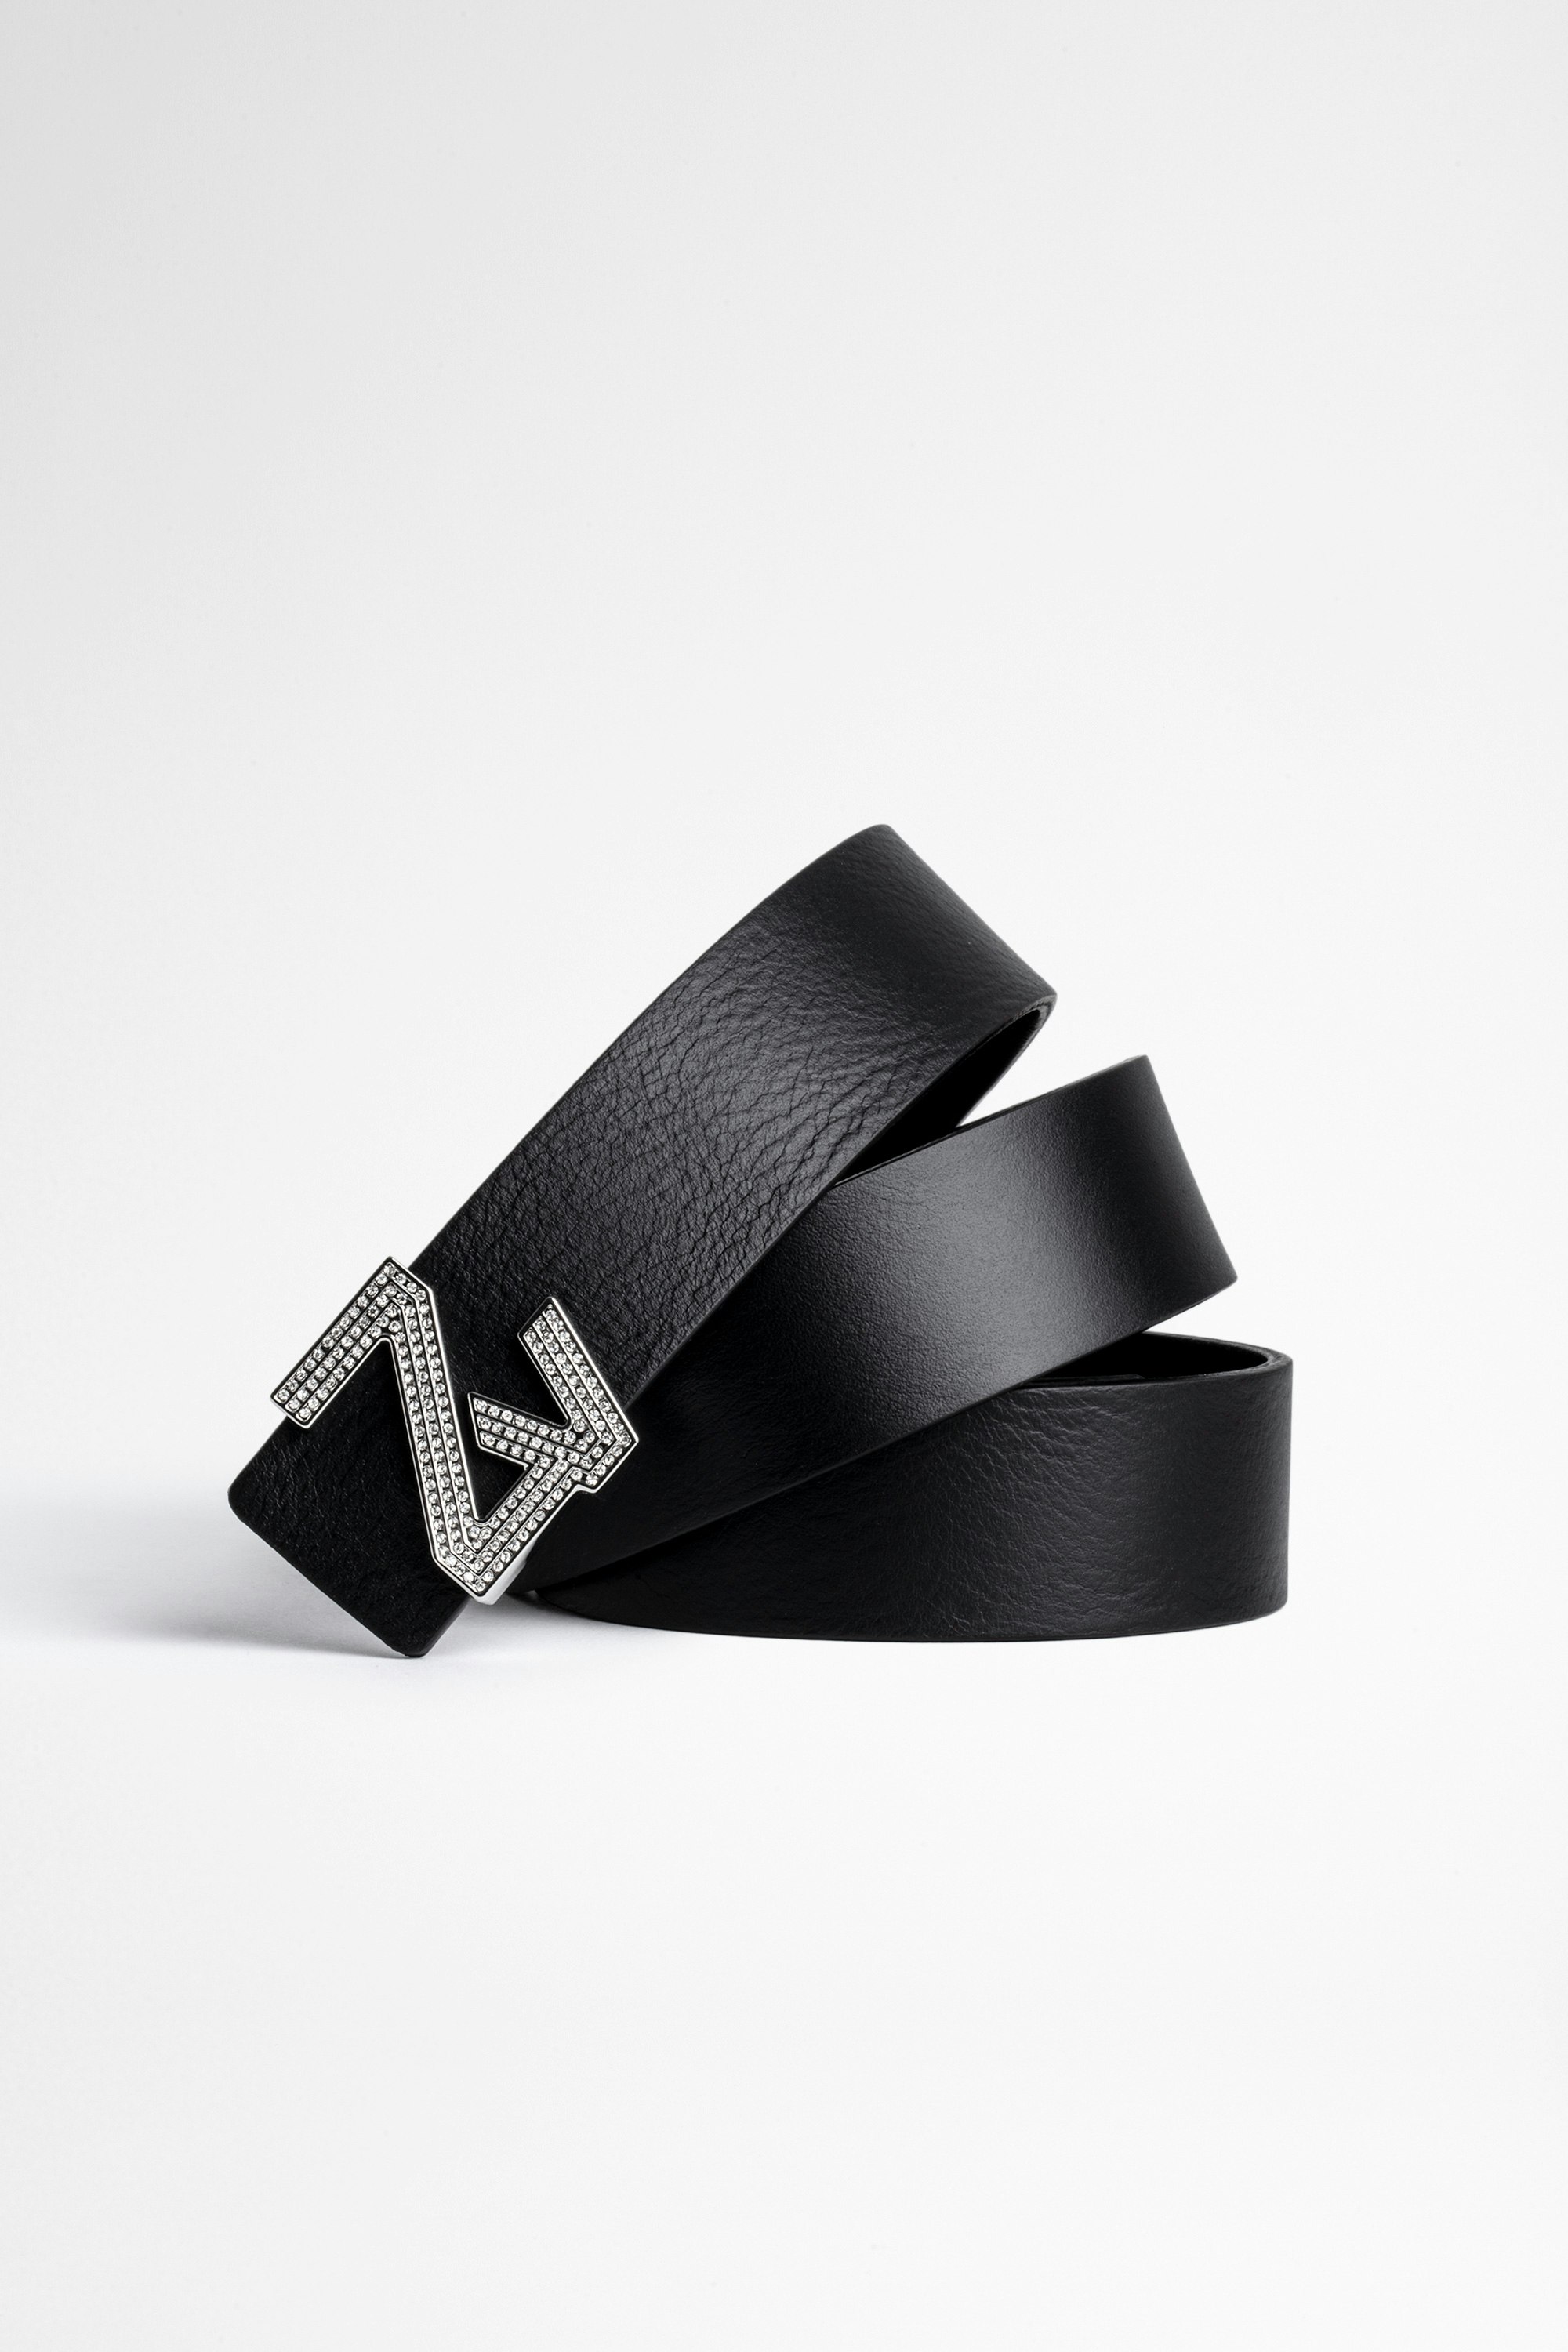 Cintura ZV Initiale Cristaux La Mini Belt Cintura in pelle nera con iniziali ZV e fibbia decorata con cristalli donna